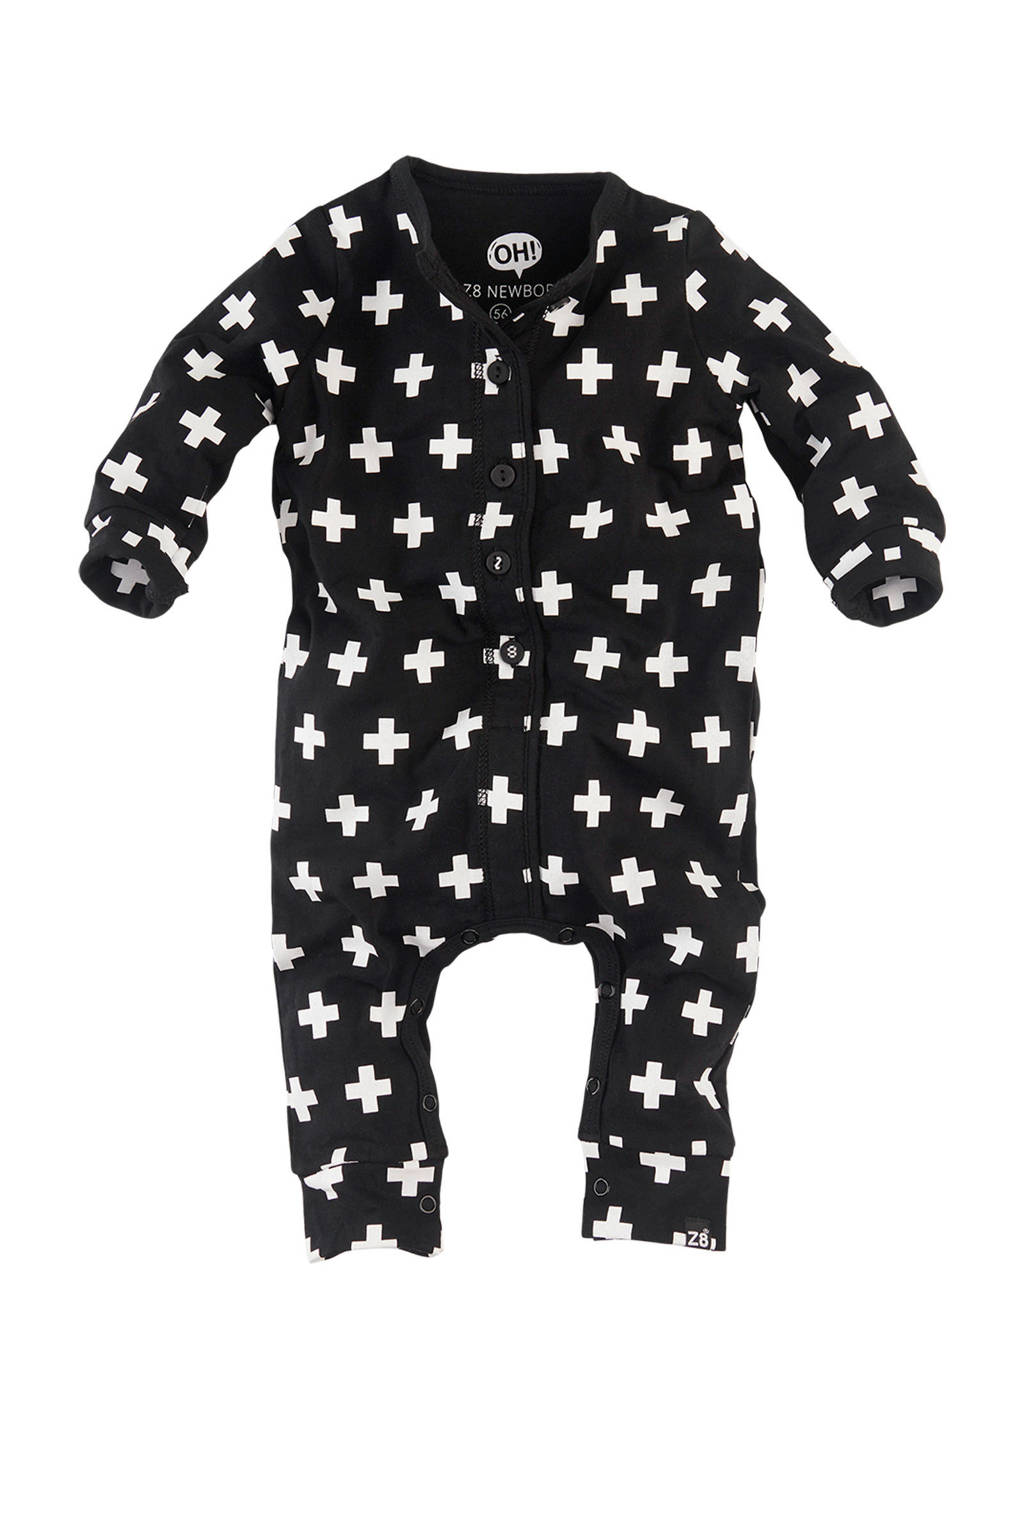 Stoffelijk overschot Giraffe Boekhouding Z8 newborn boxpak Caiden met all over print zwart/wit | wehkamp